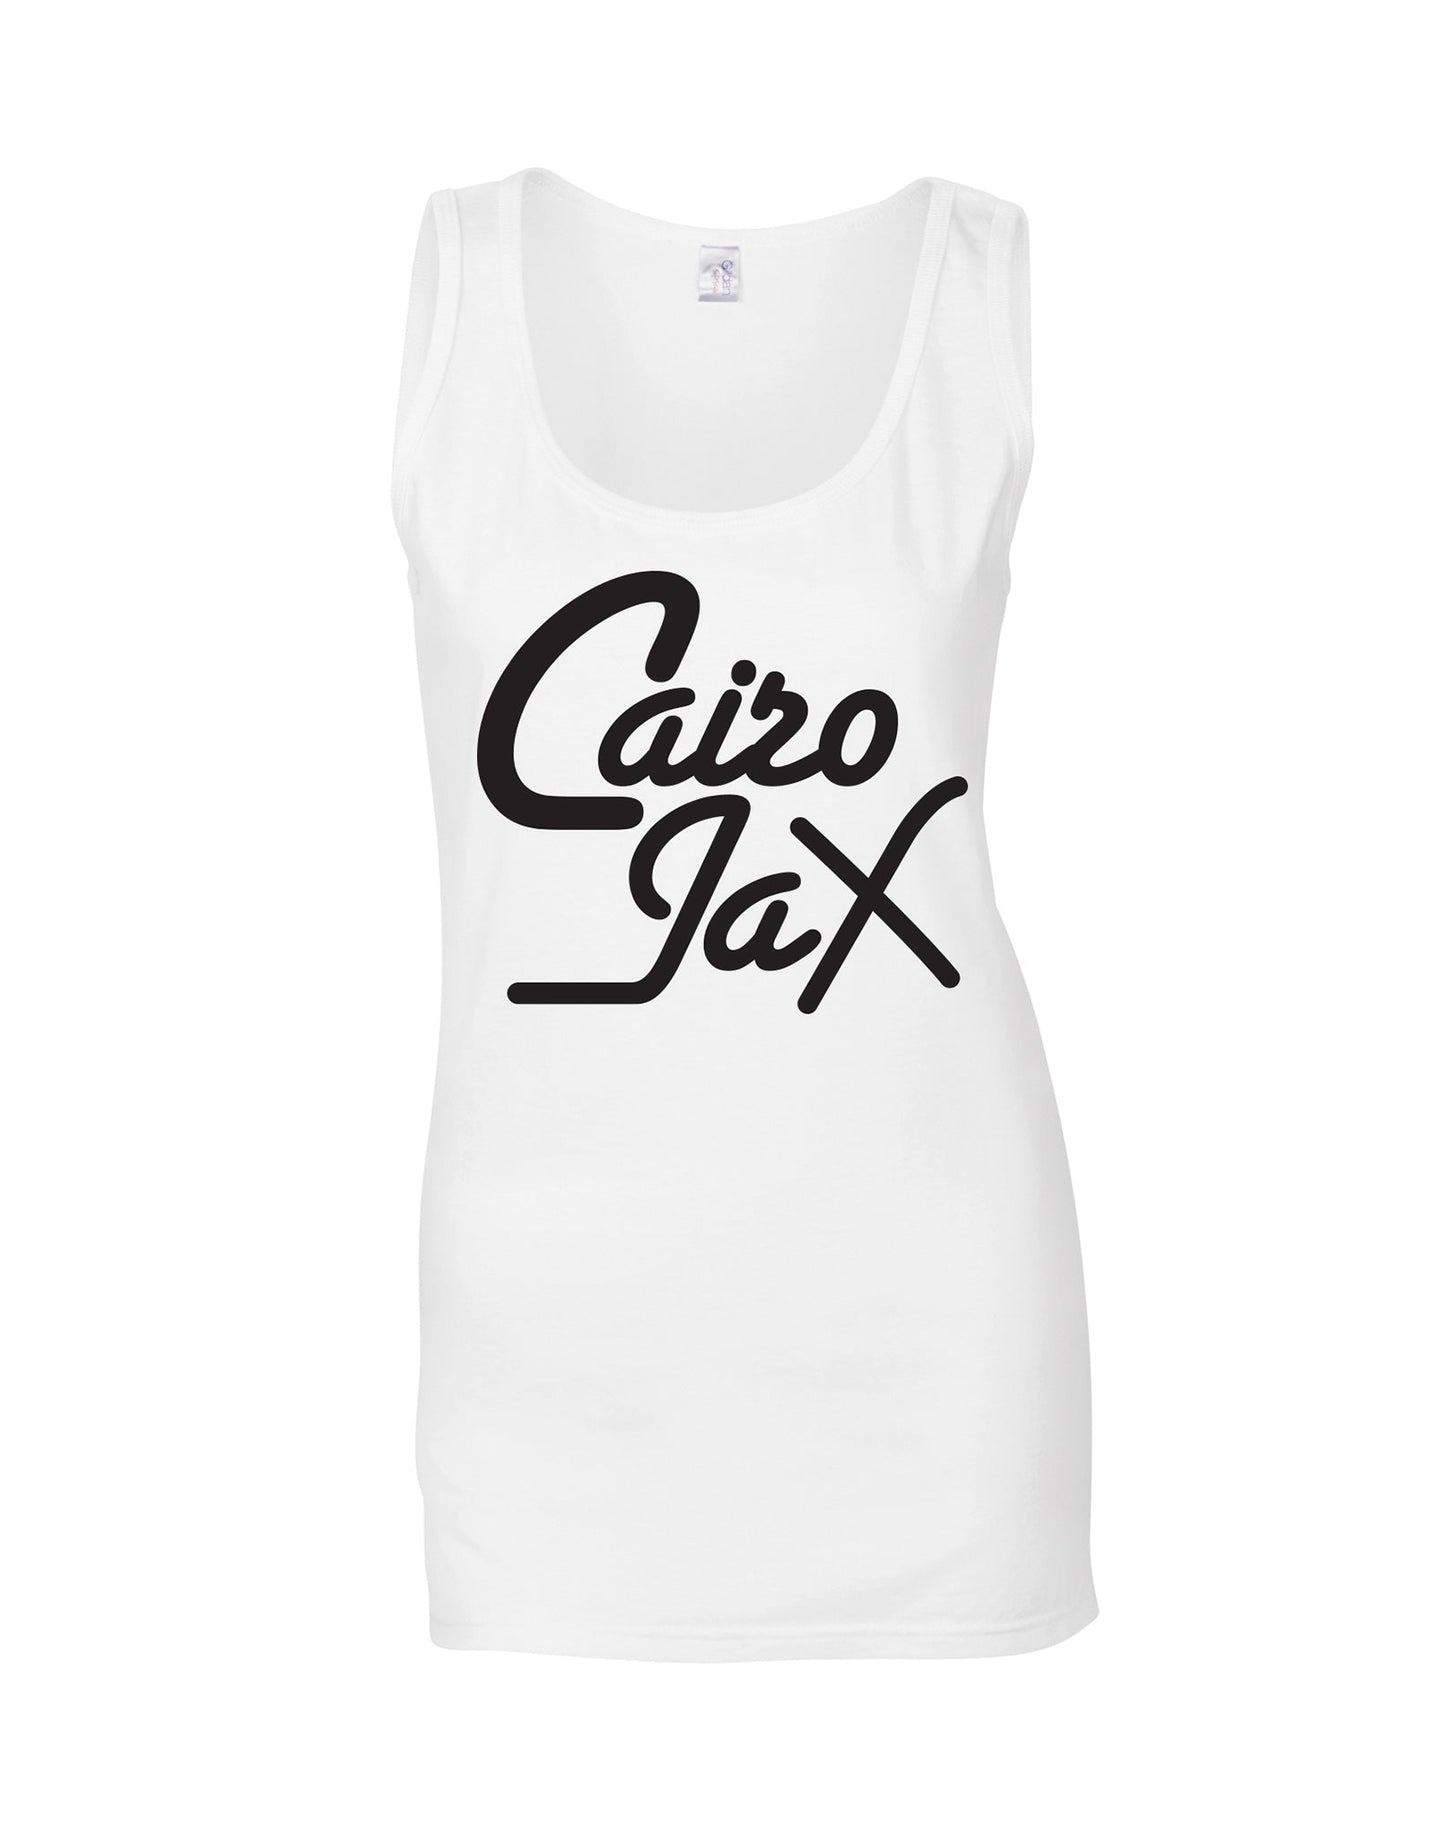 Cairo Jax ladies fit vest - various colours - Dirty Stop Outs